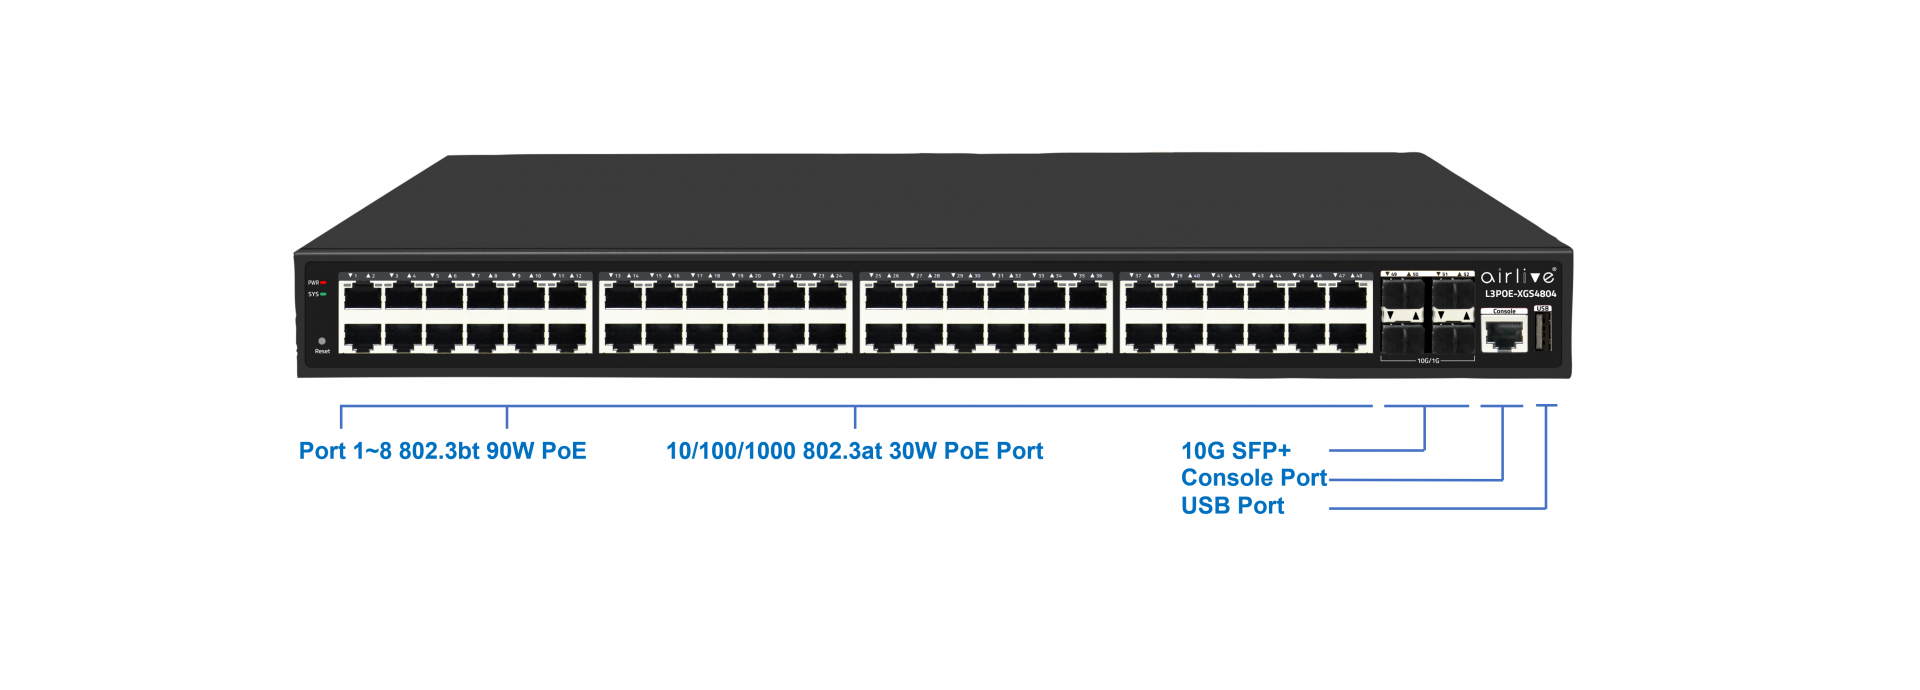 16 Port 90W Managed PoE Switch with 4 SFP